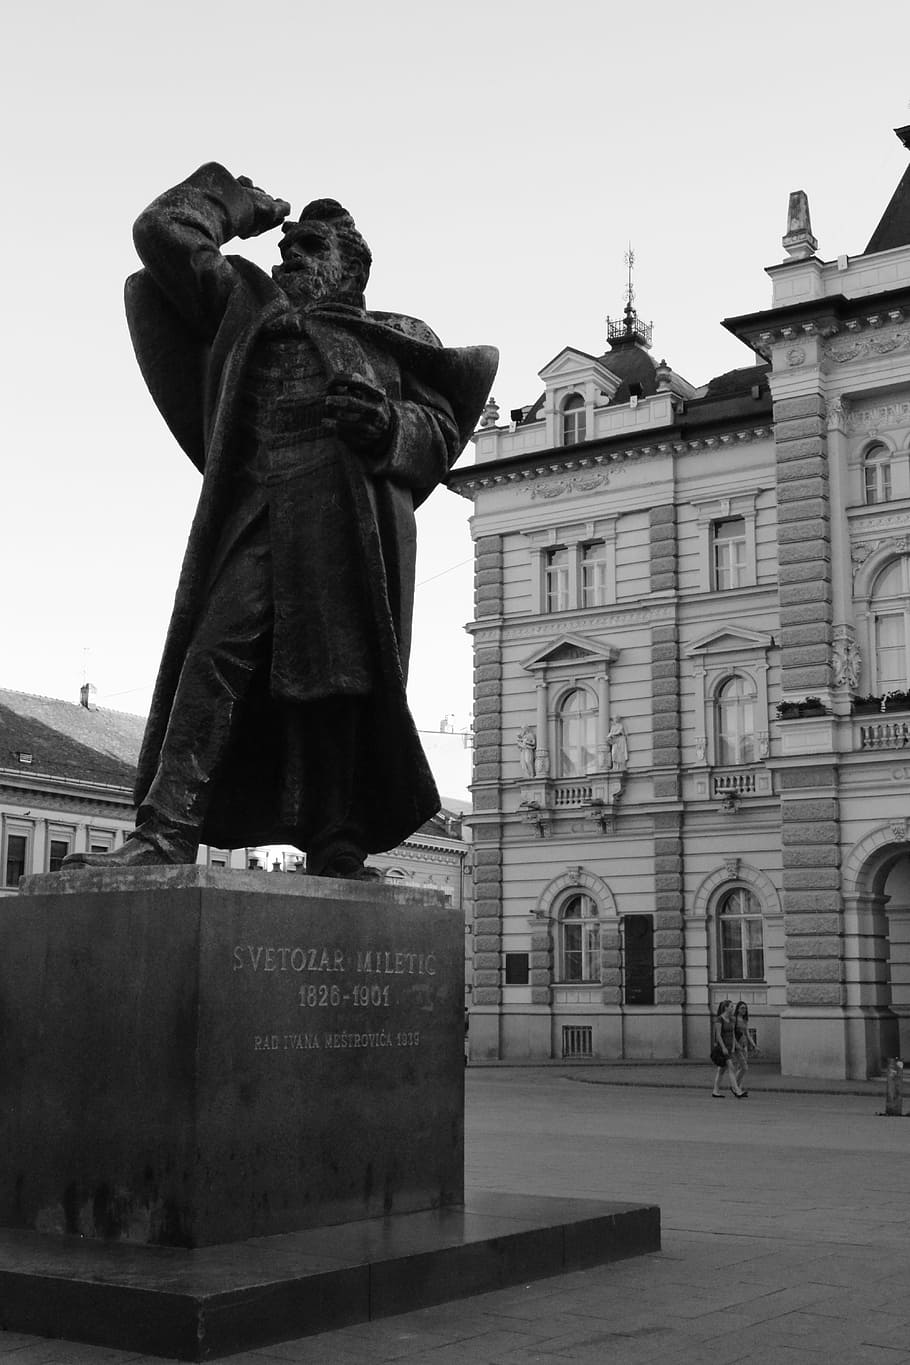 ノヴィサド, セルビア, 彫像, 市庁舎, 記念碑, 旅行先, 彫刻, 建築, 歴史, 像